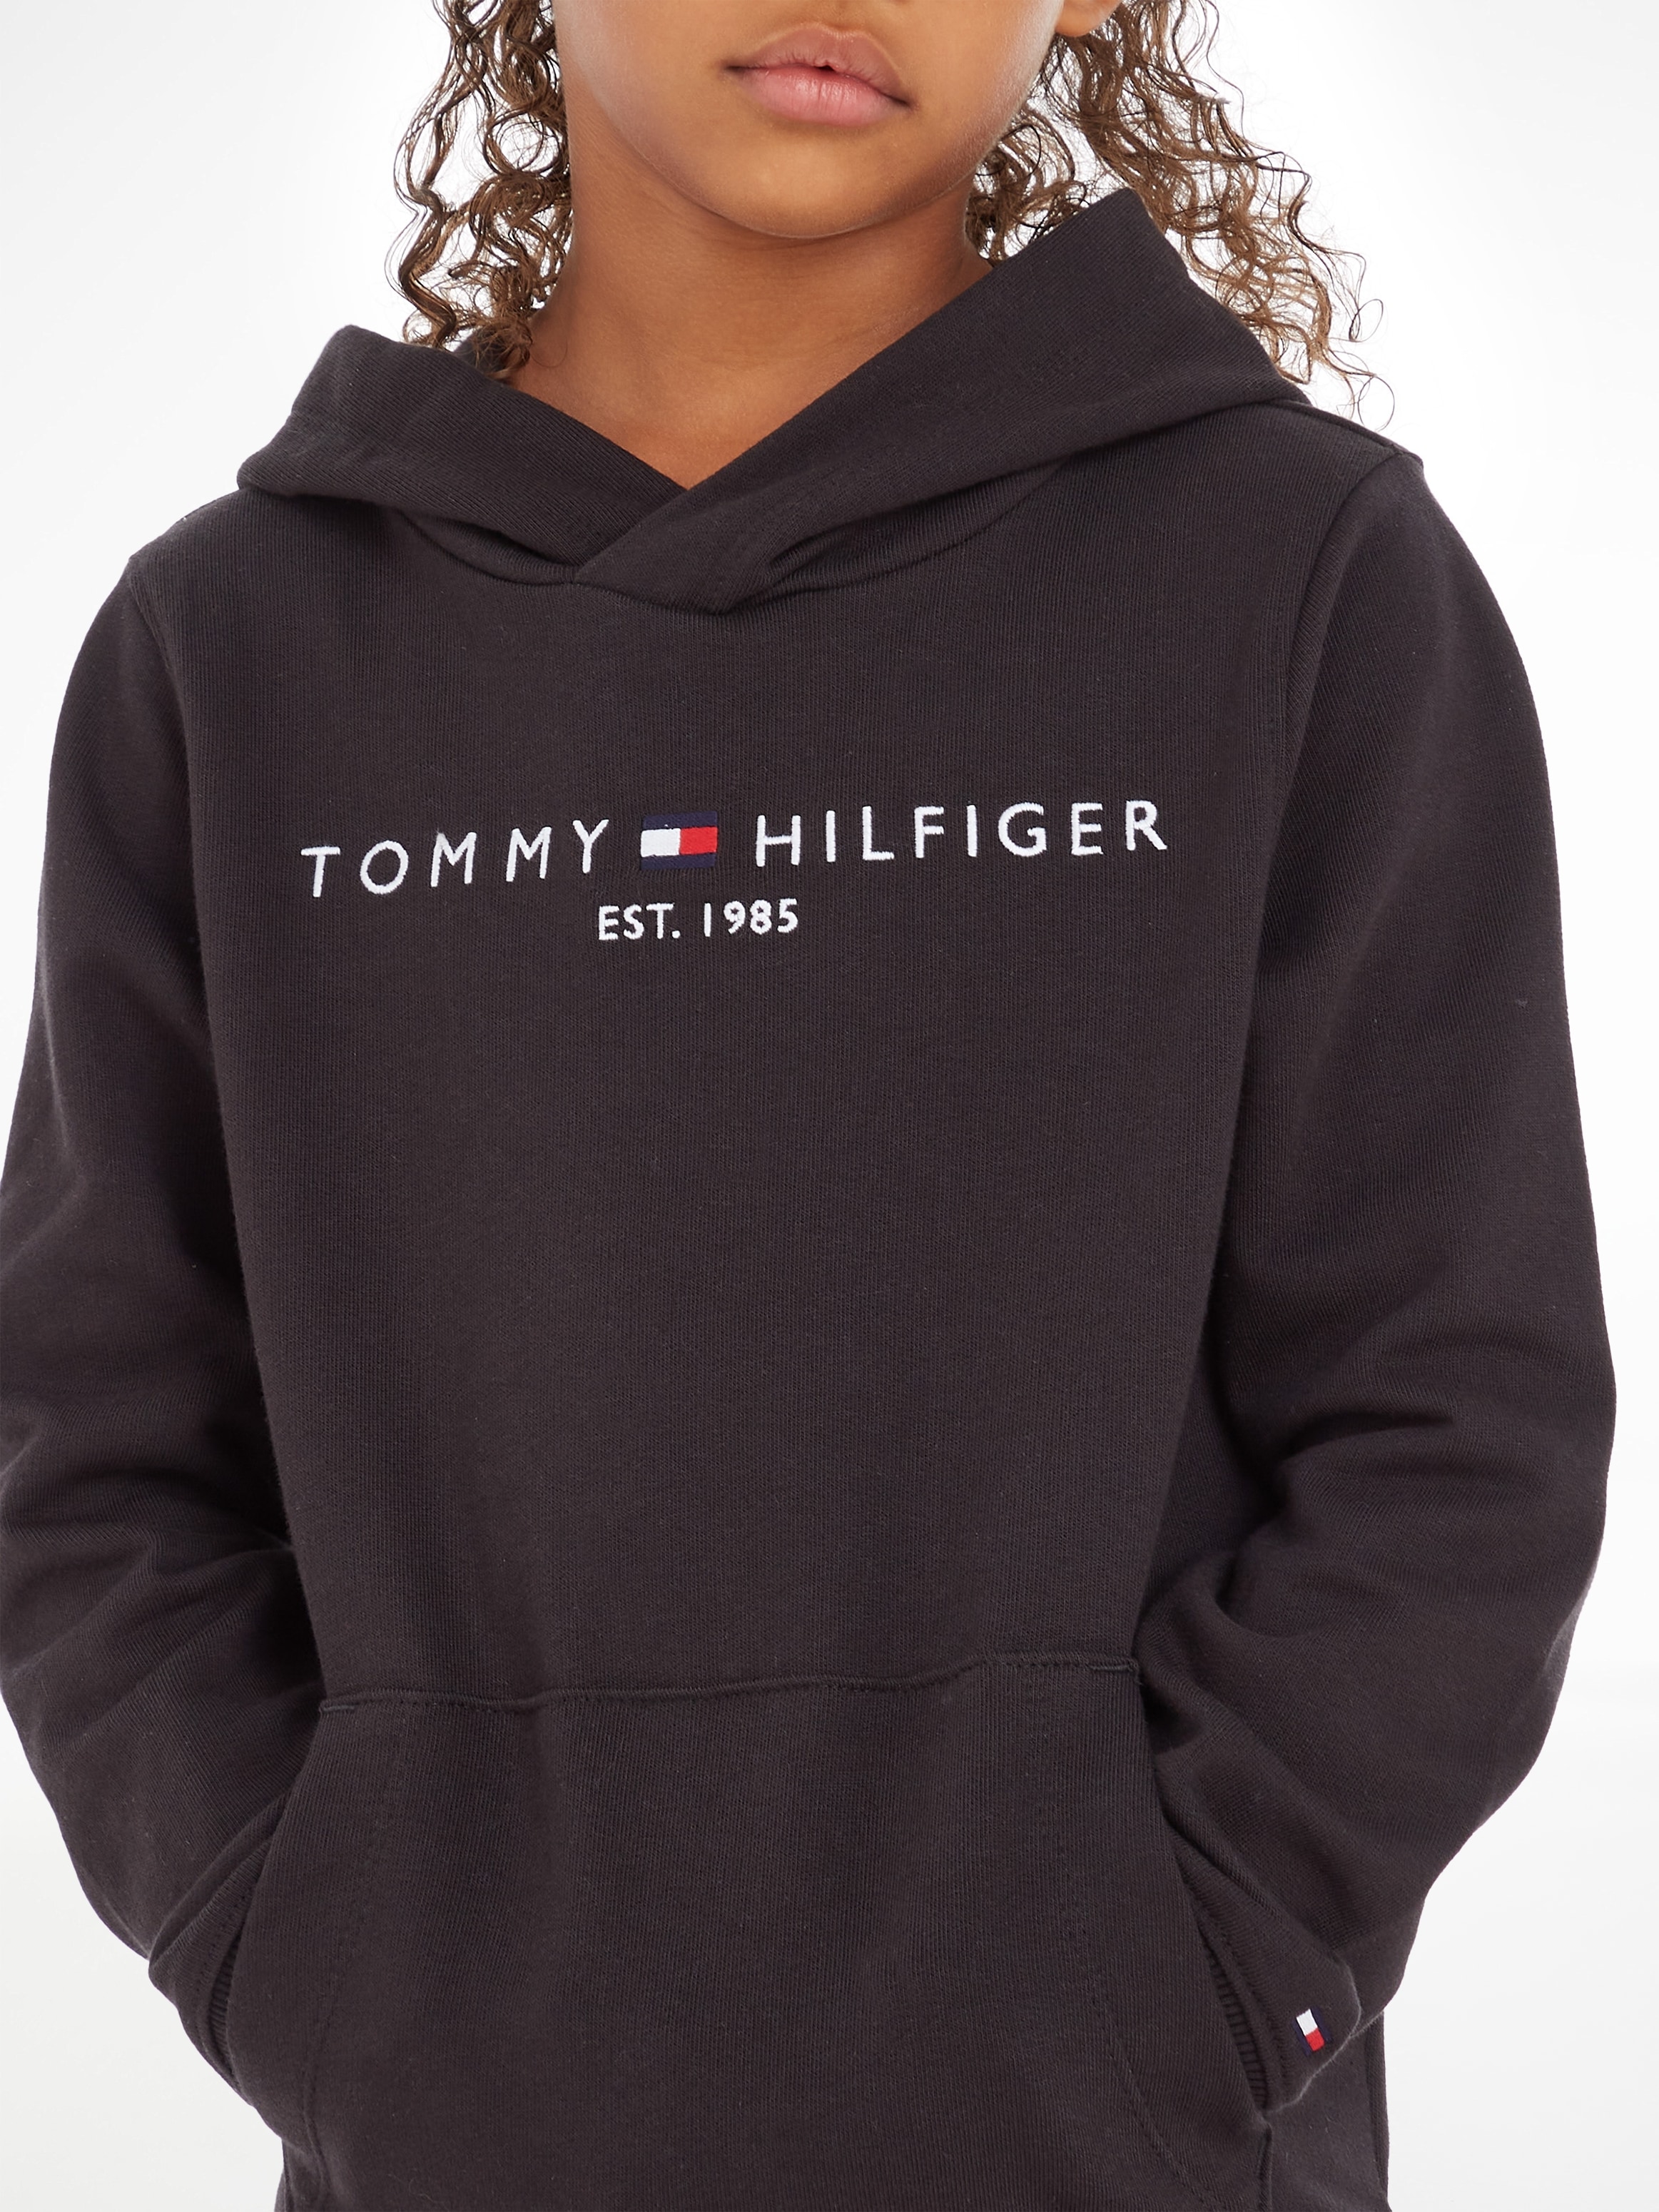 Trendige Tommy Hilfiger Kapuzensweatshirt »ESSENTIAL HOODIE«, Kinder Kids  Junior MiniMe,für Jungen und Mädchen ohne Mindestbestellwert bestellen